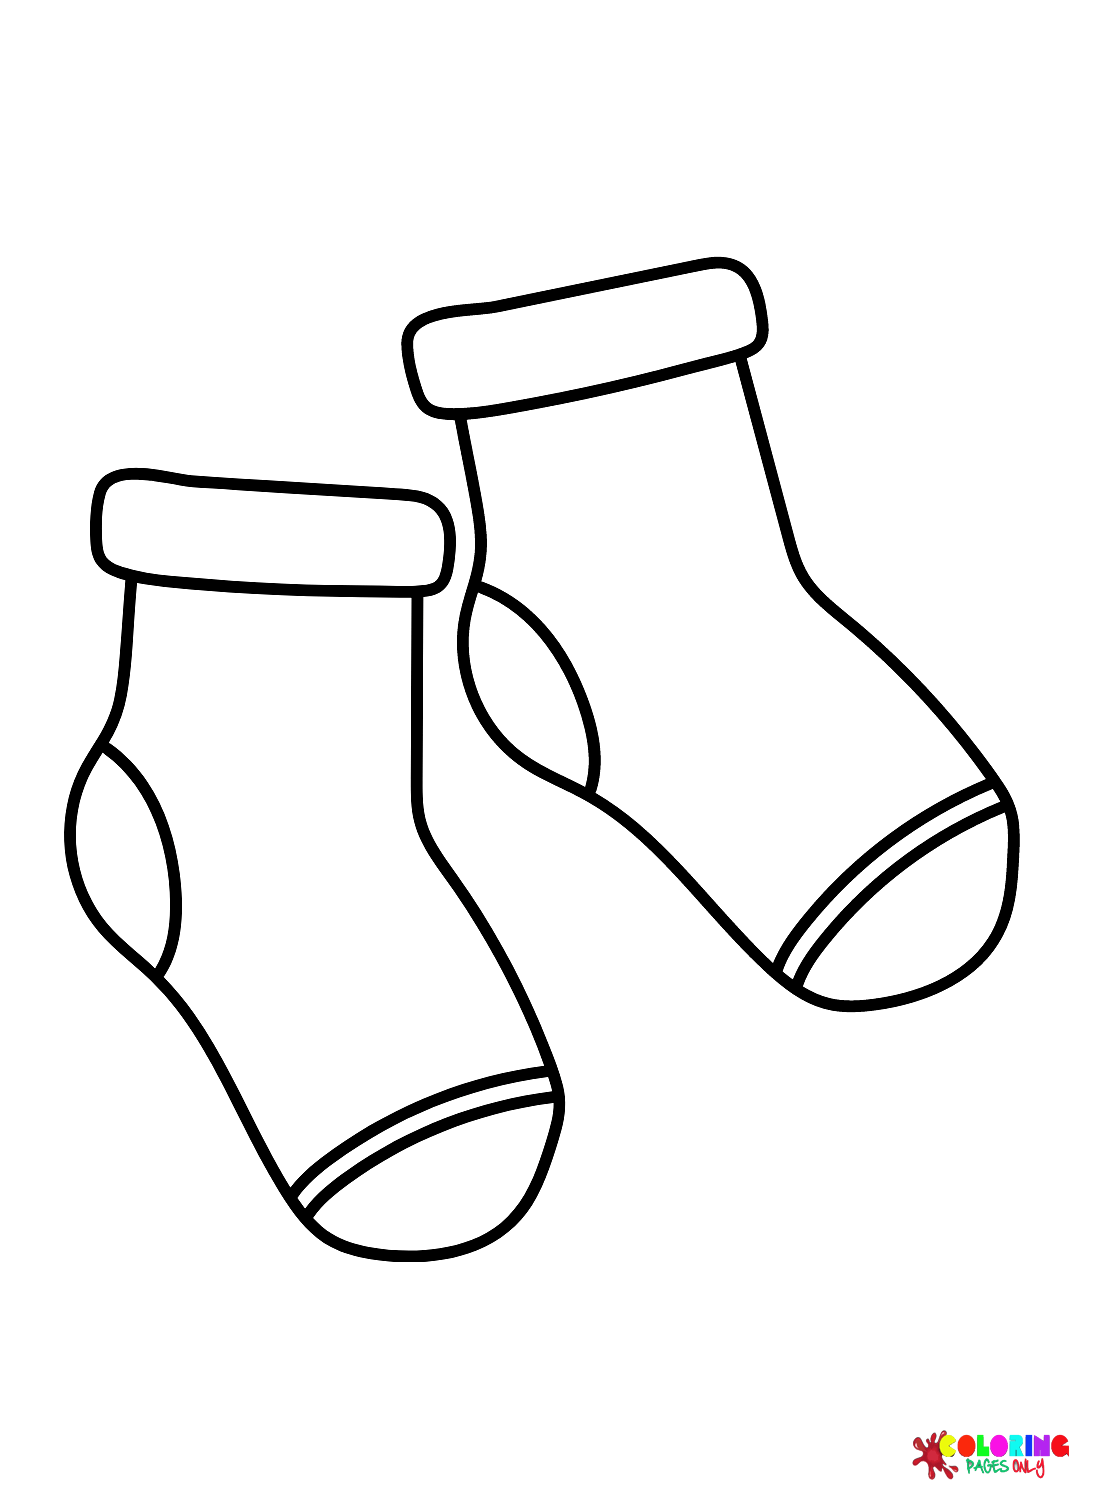 Images de chaussettes gratuites de chaussettes